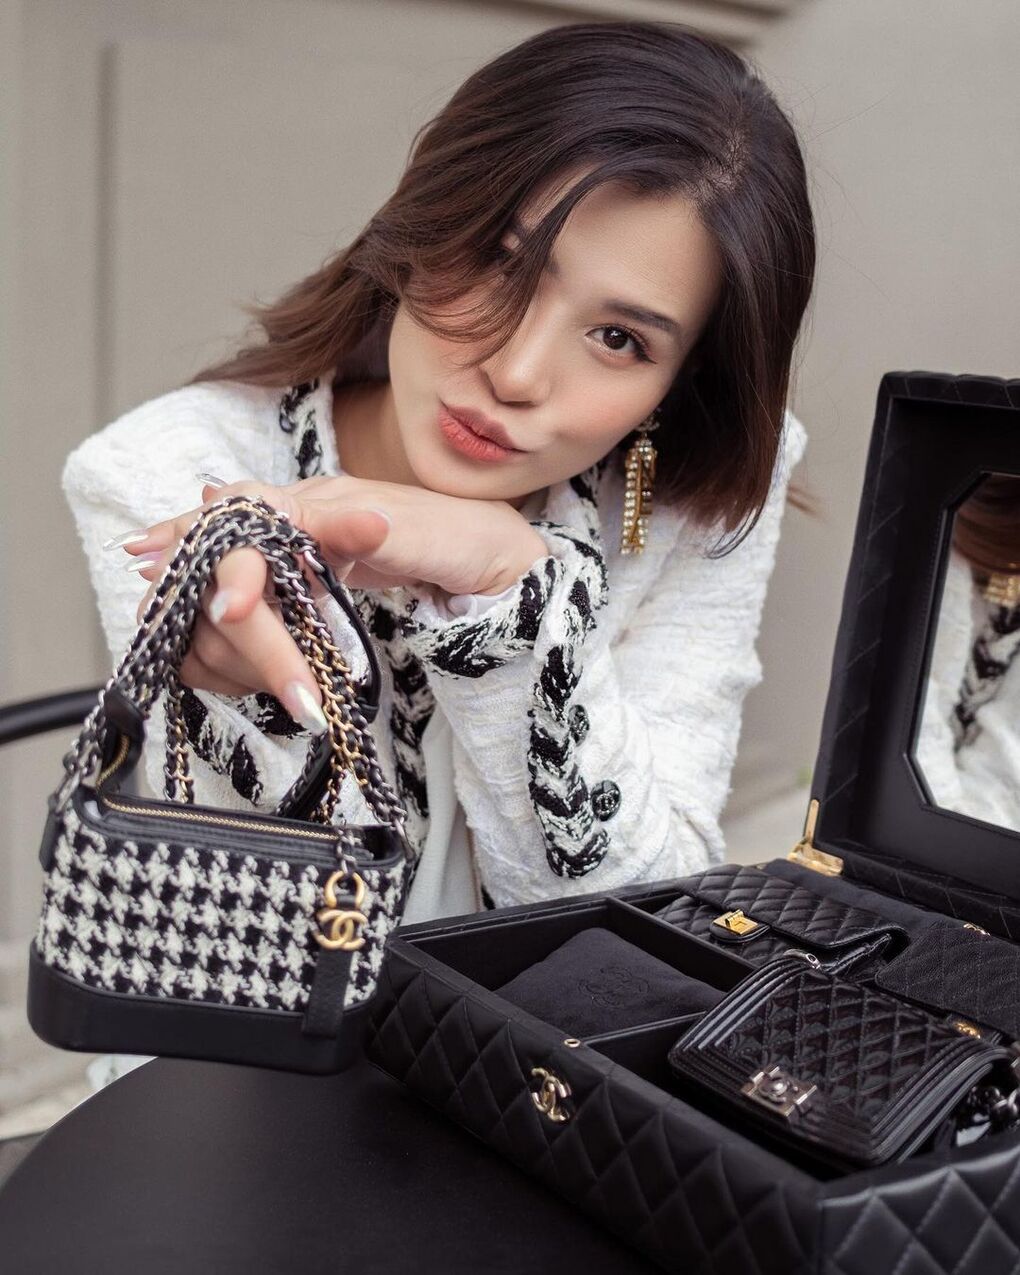 Đông Nhi dành tặng con gái yêu BST túi Chanel đáng gián 700 triệu đồng